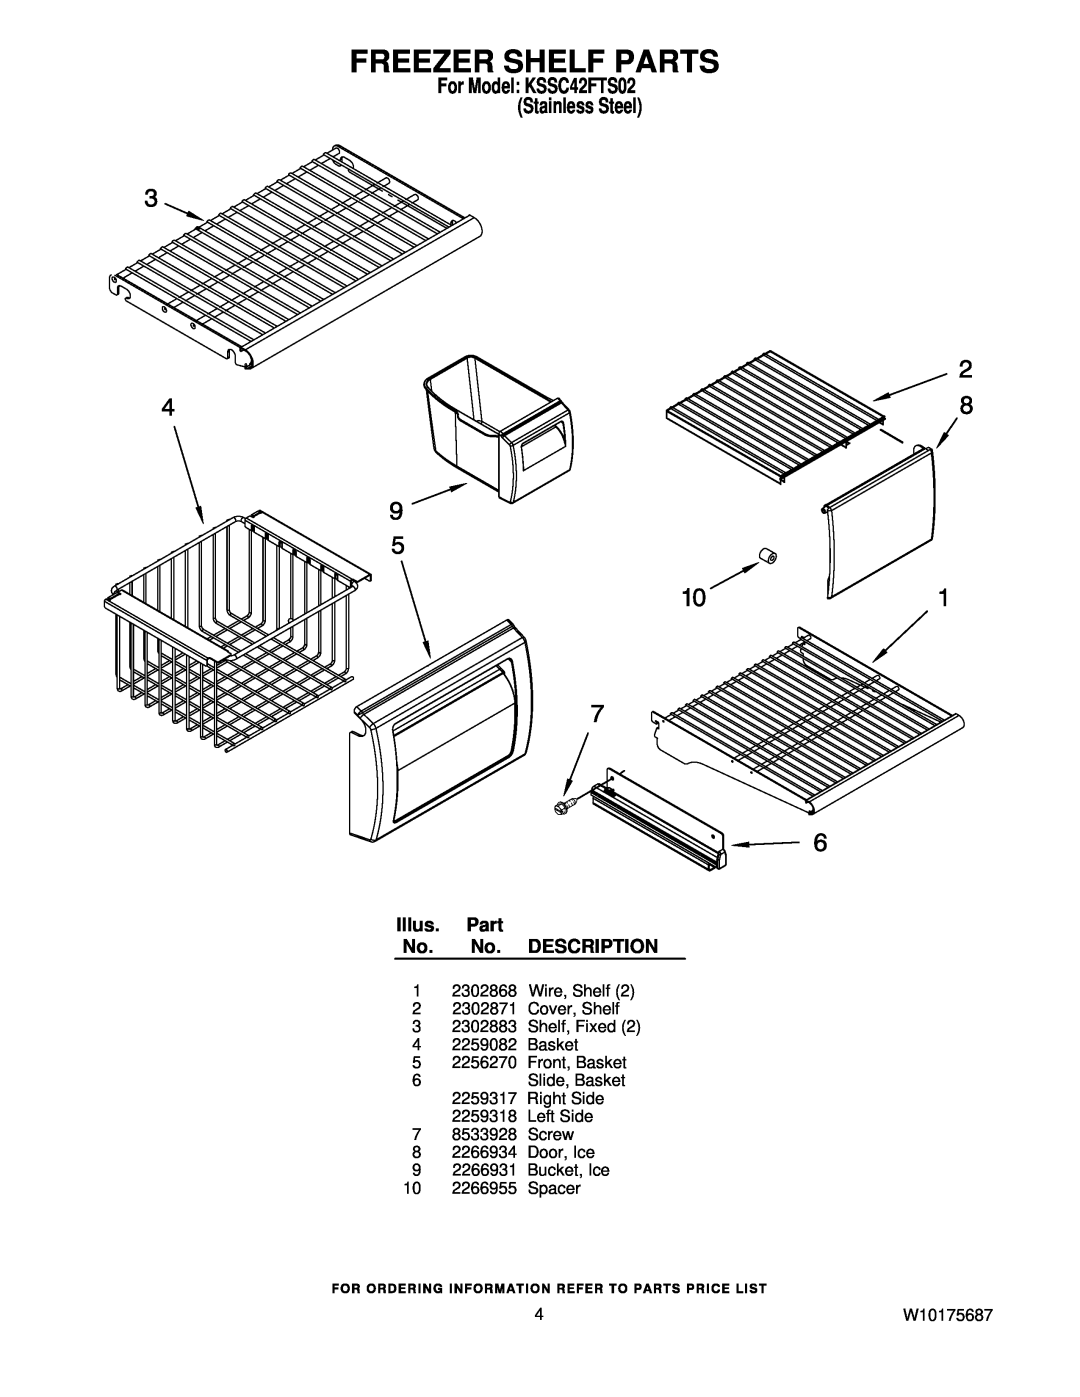 KitchenAid manual Freezer Shelf Parts, For Model KSSC42FTS02 Stainless Steel, Illus. Part No. No. DESCRIPTION 